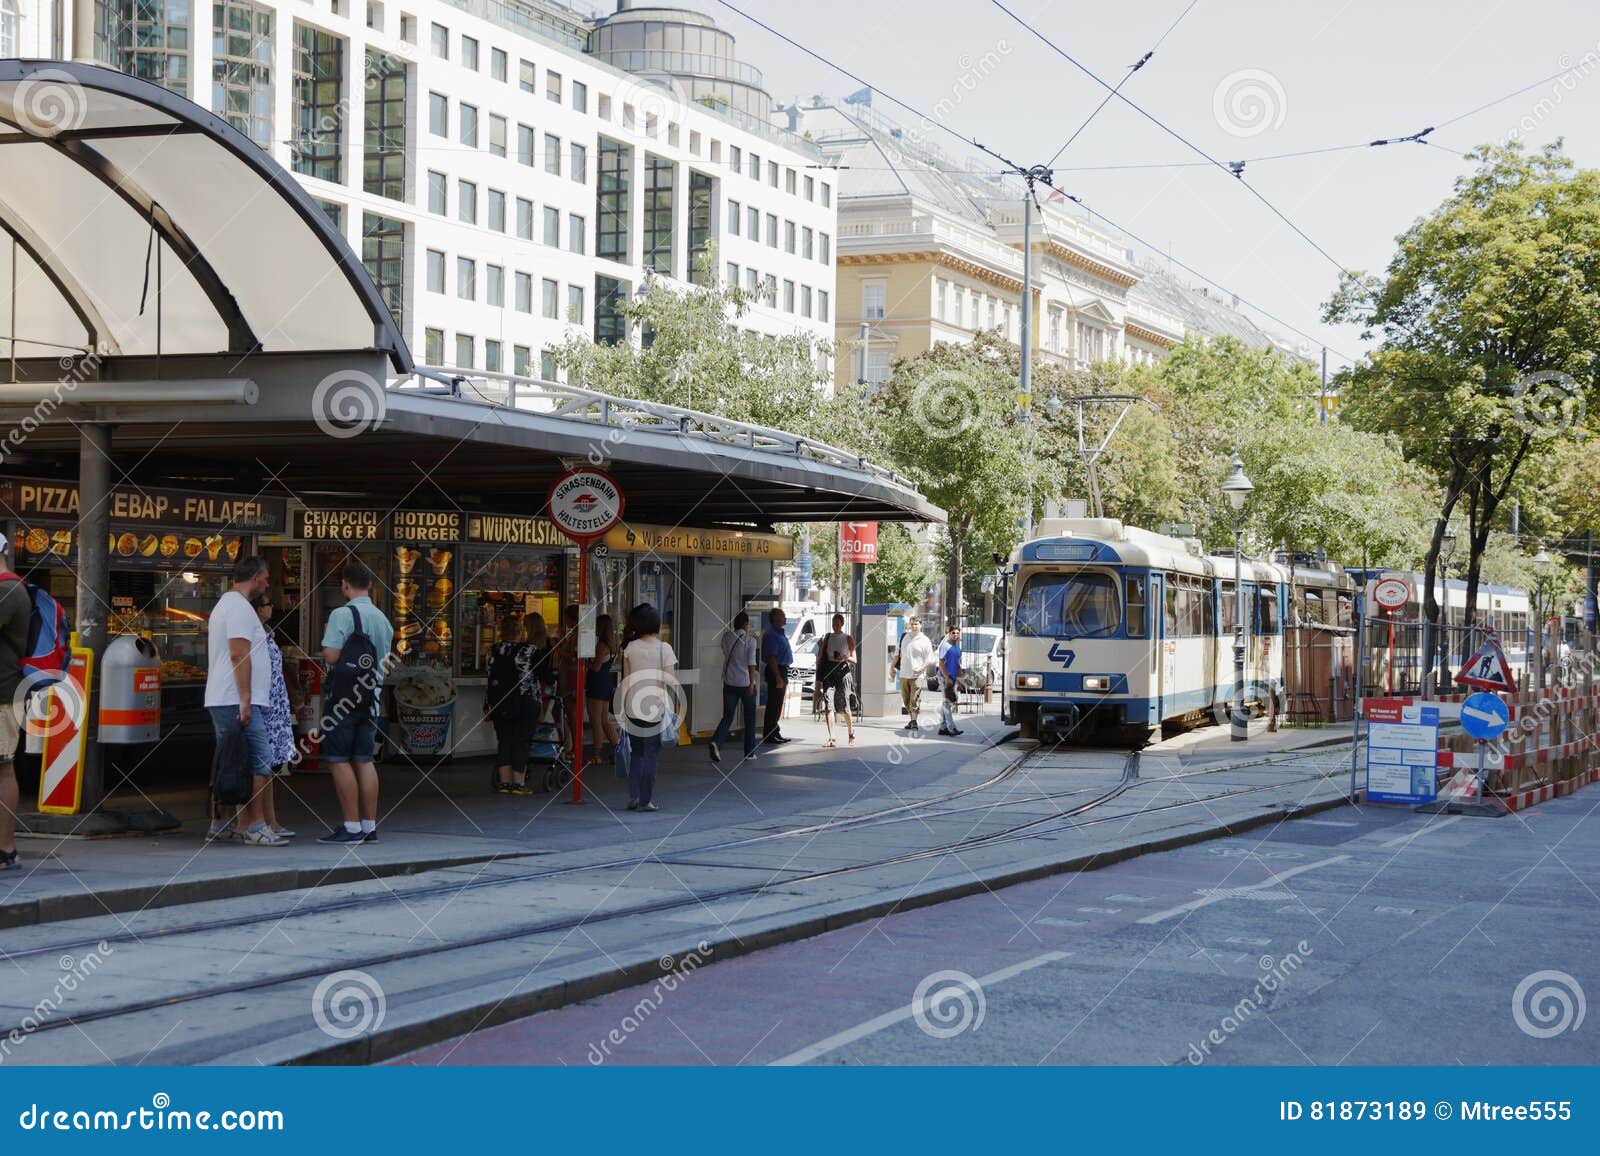 Vienna Ring Tram - Kids Love Vienna